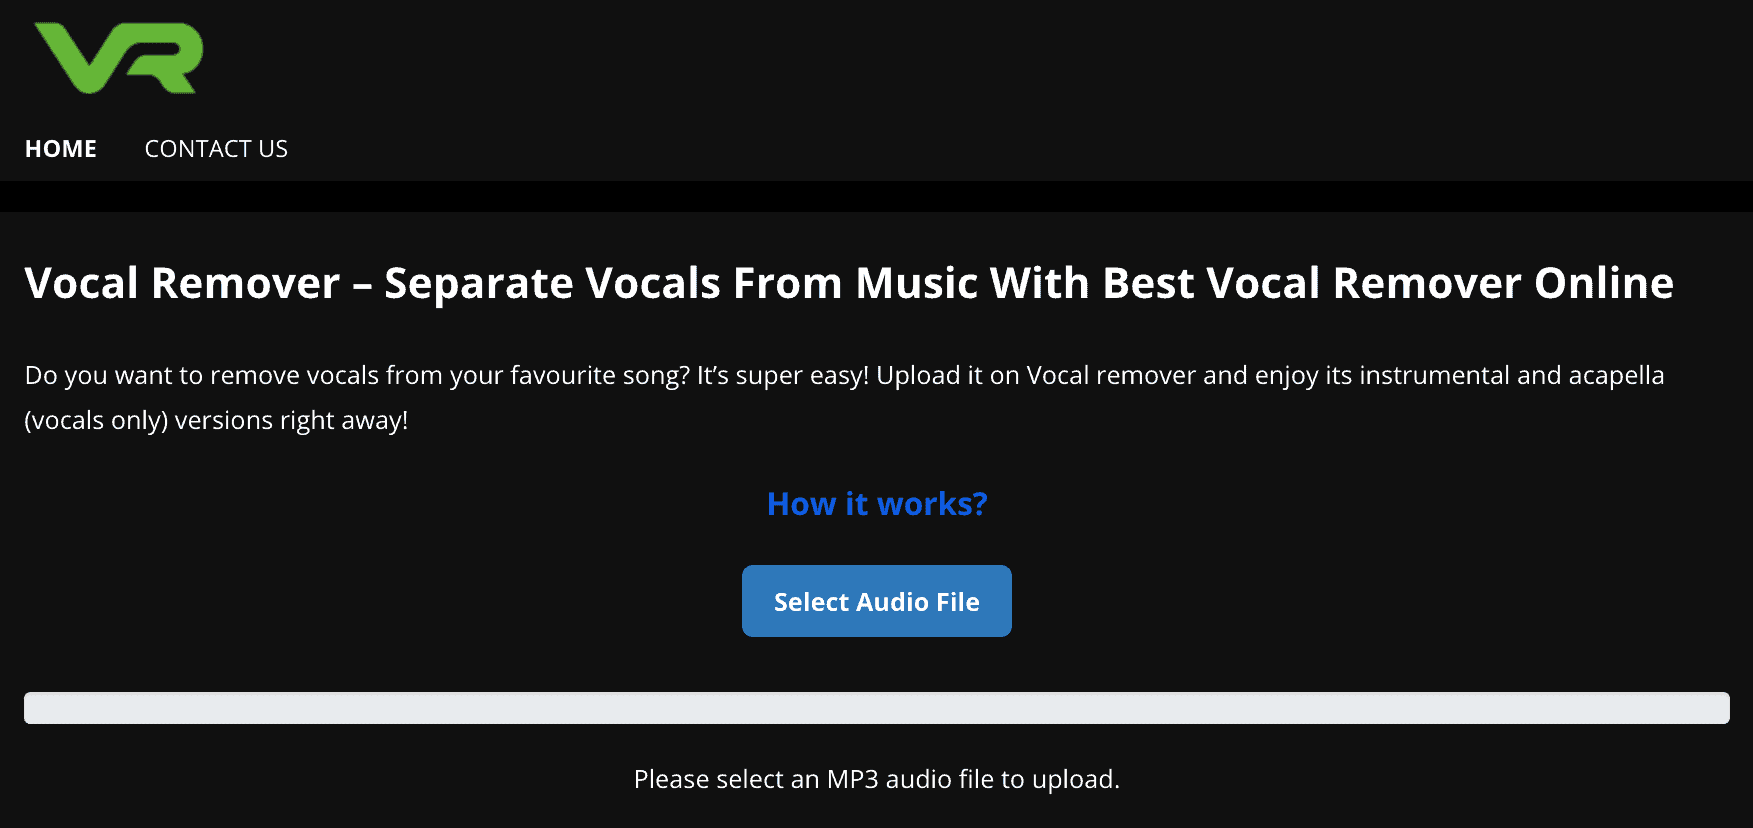 7 generadores acapella gratuitos: extrae las voces de cualquier canción